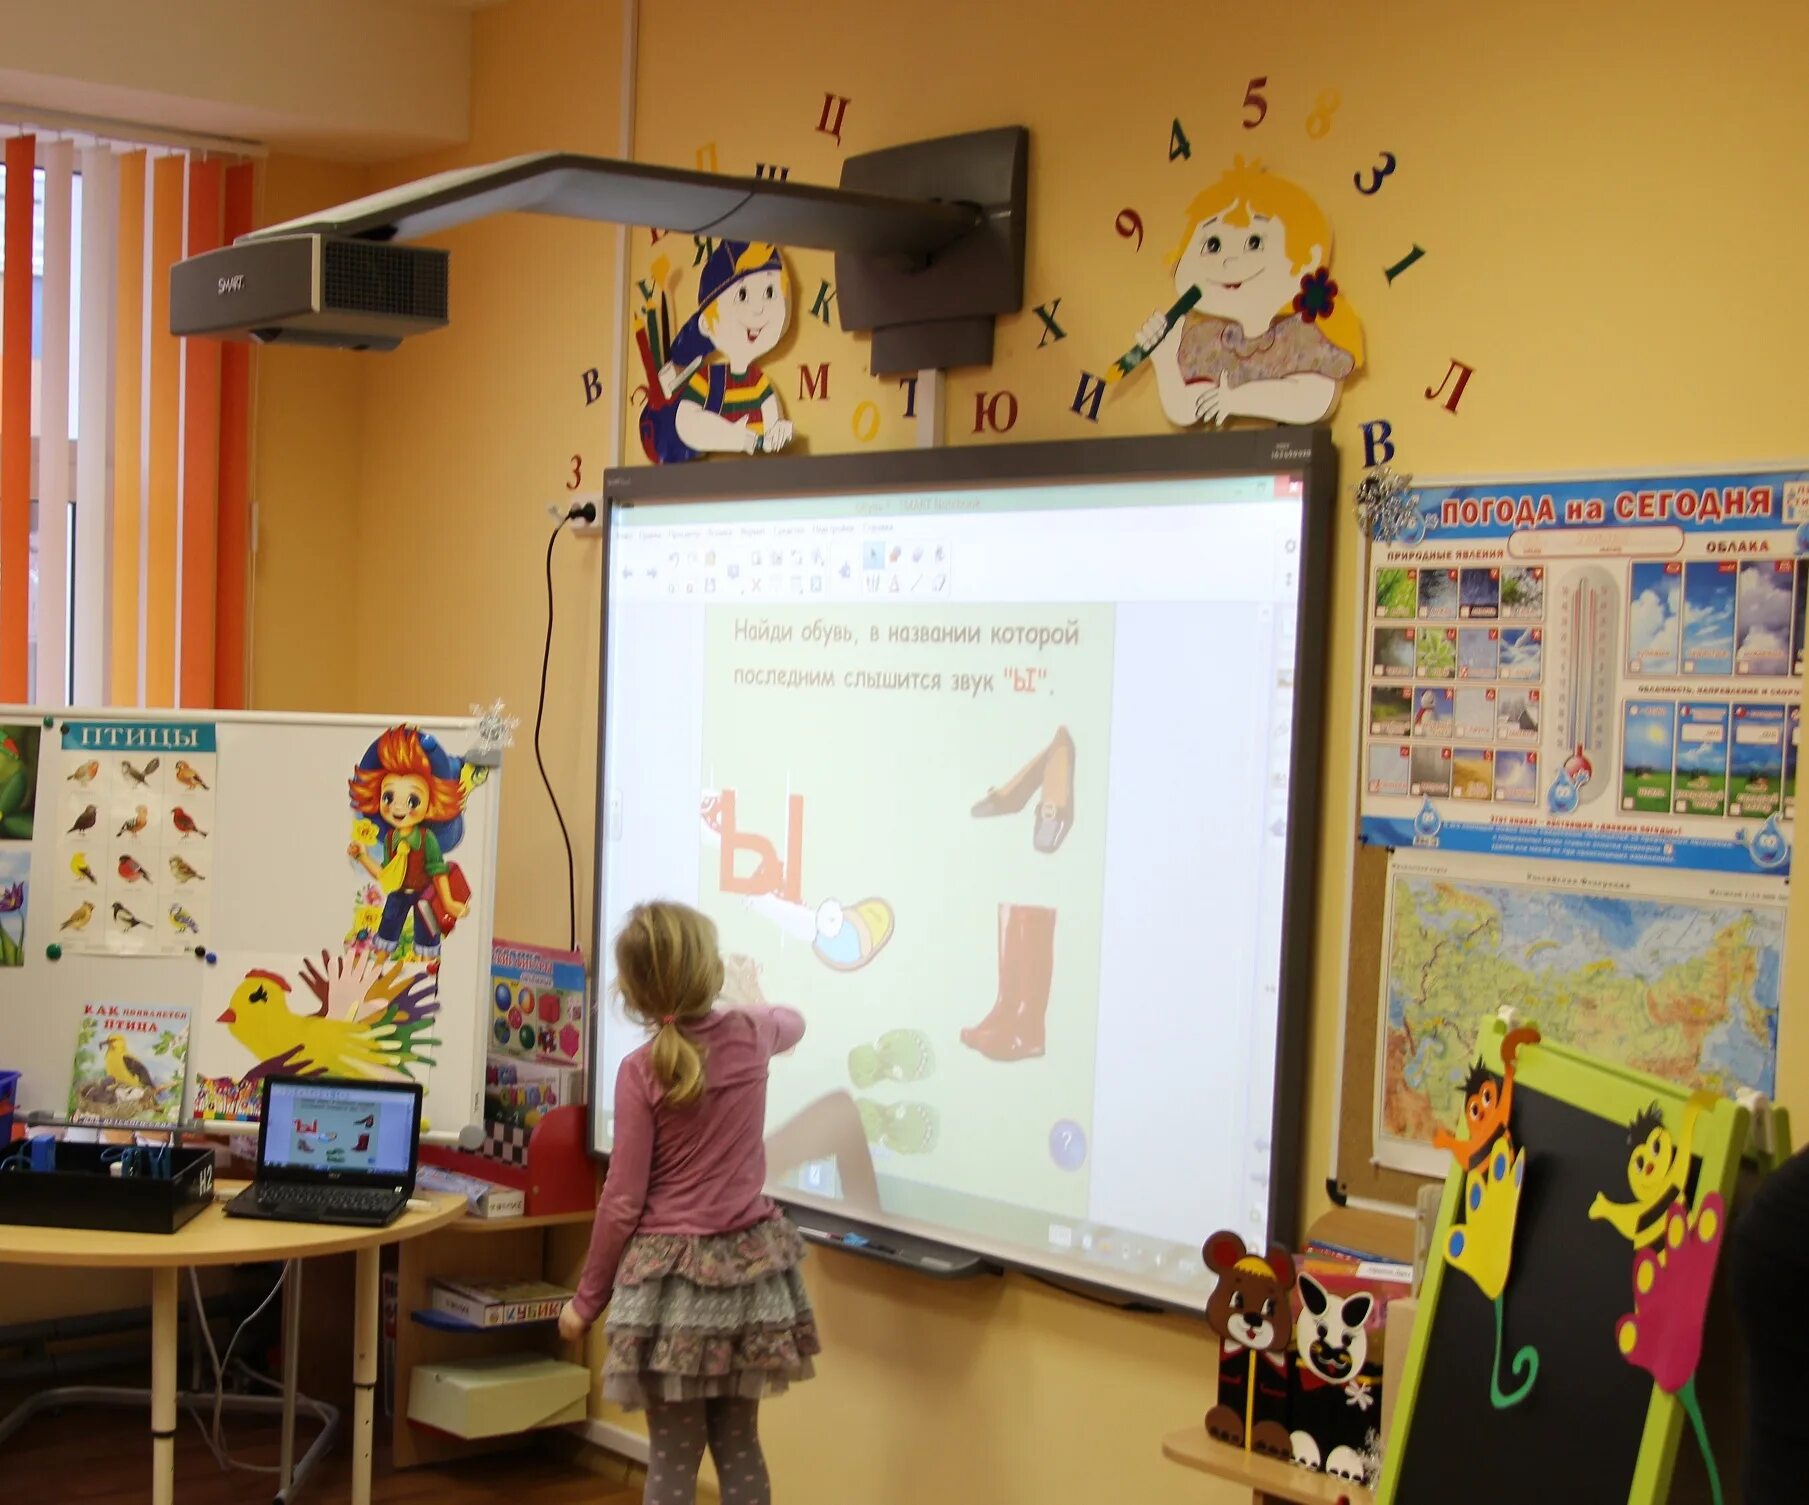 Современные технологии в работе доу. Интерактивная доска в детском саду. Интерактивная доска в ДОУ. Мультимедийное оборудование для детского сада. Современное интерактивное оборудование в ДОУ.